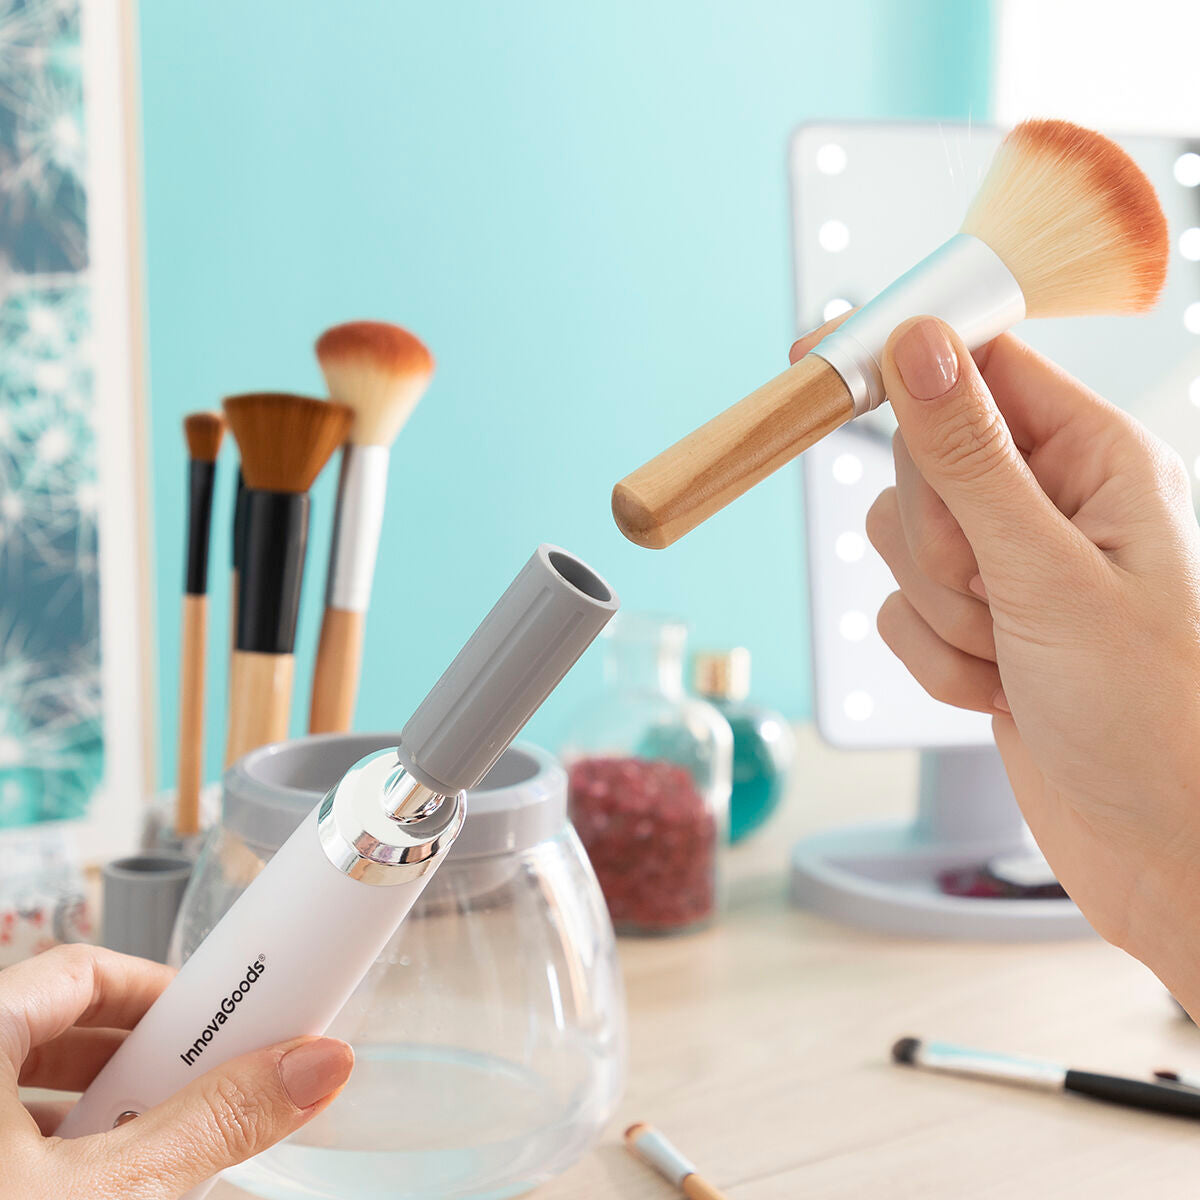 Make-up brush cleaner